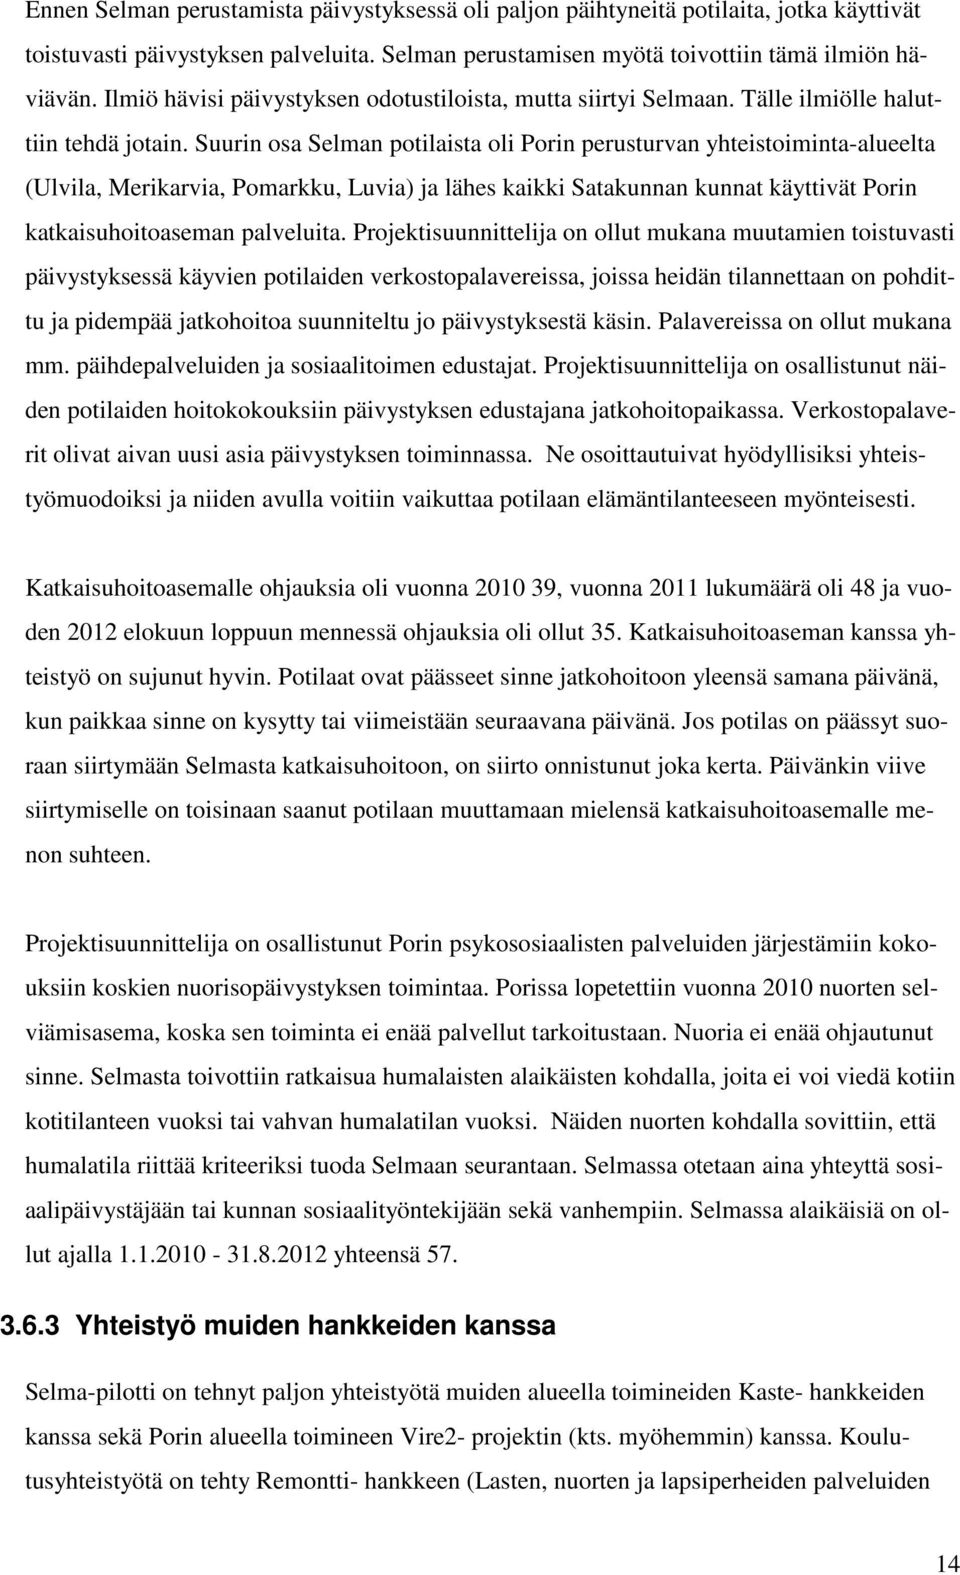 Suurin osa Selman potilaista oli Porin perusturvan yhteistoiminta-alueelta (Ulvila, Merikarvia, Pomarkku, Luvia) ja lähes kaikki Satakunnan kunnat käyttivät Porin katkaisuhoitoaseman palveluita.